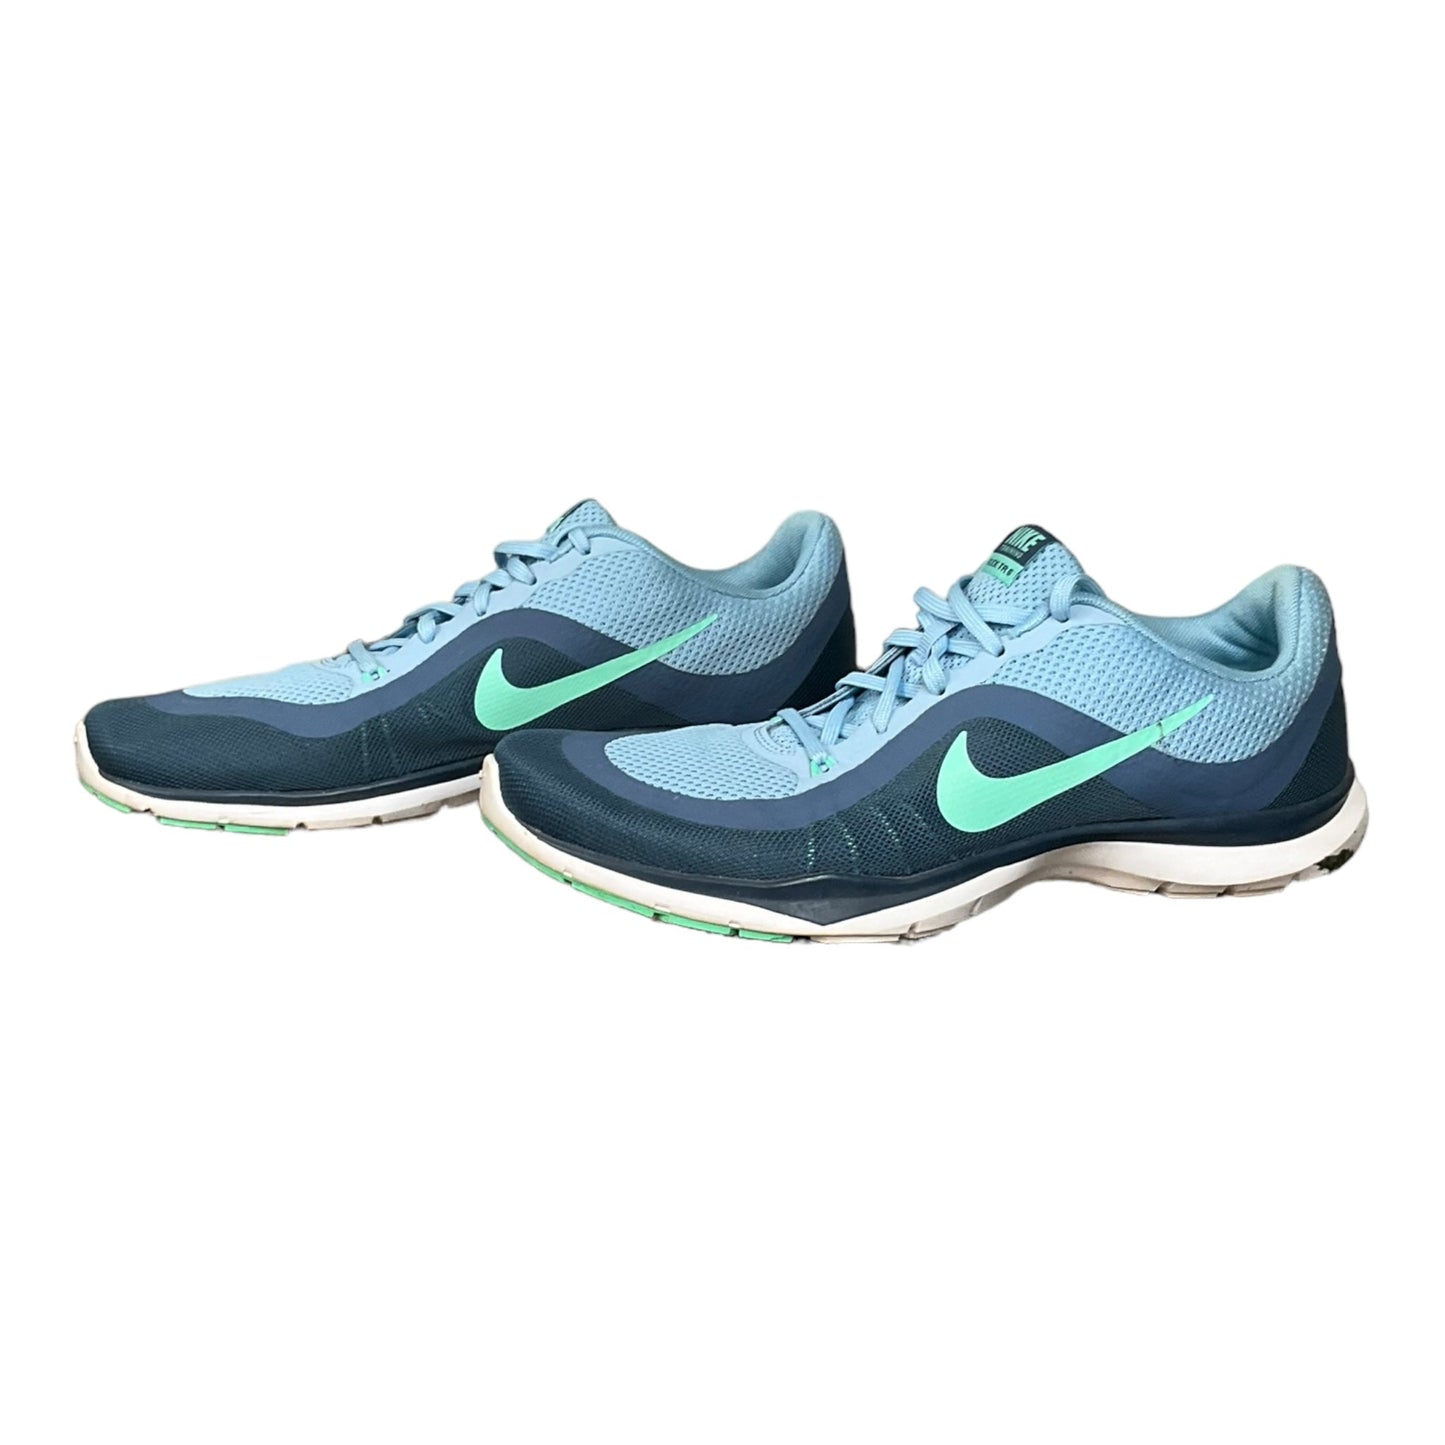 Blue Shoes Athletic Nike, Size 10